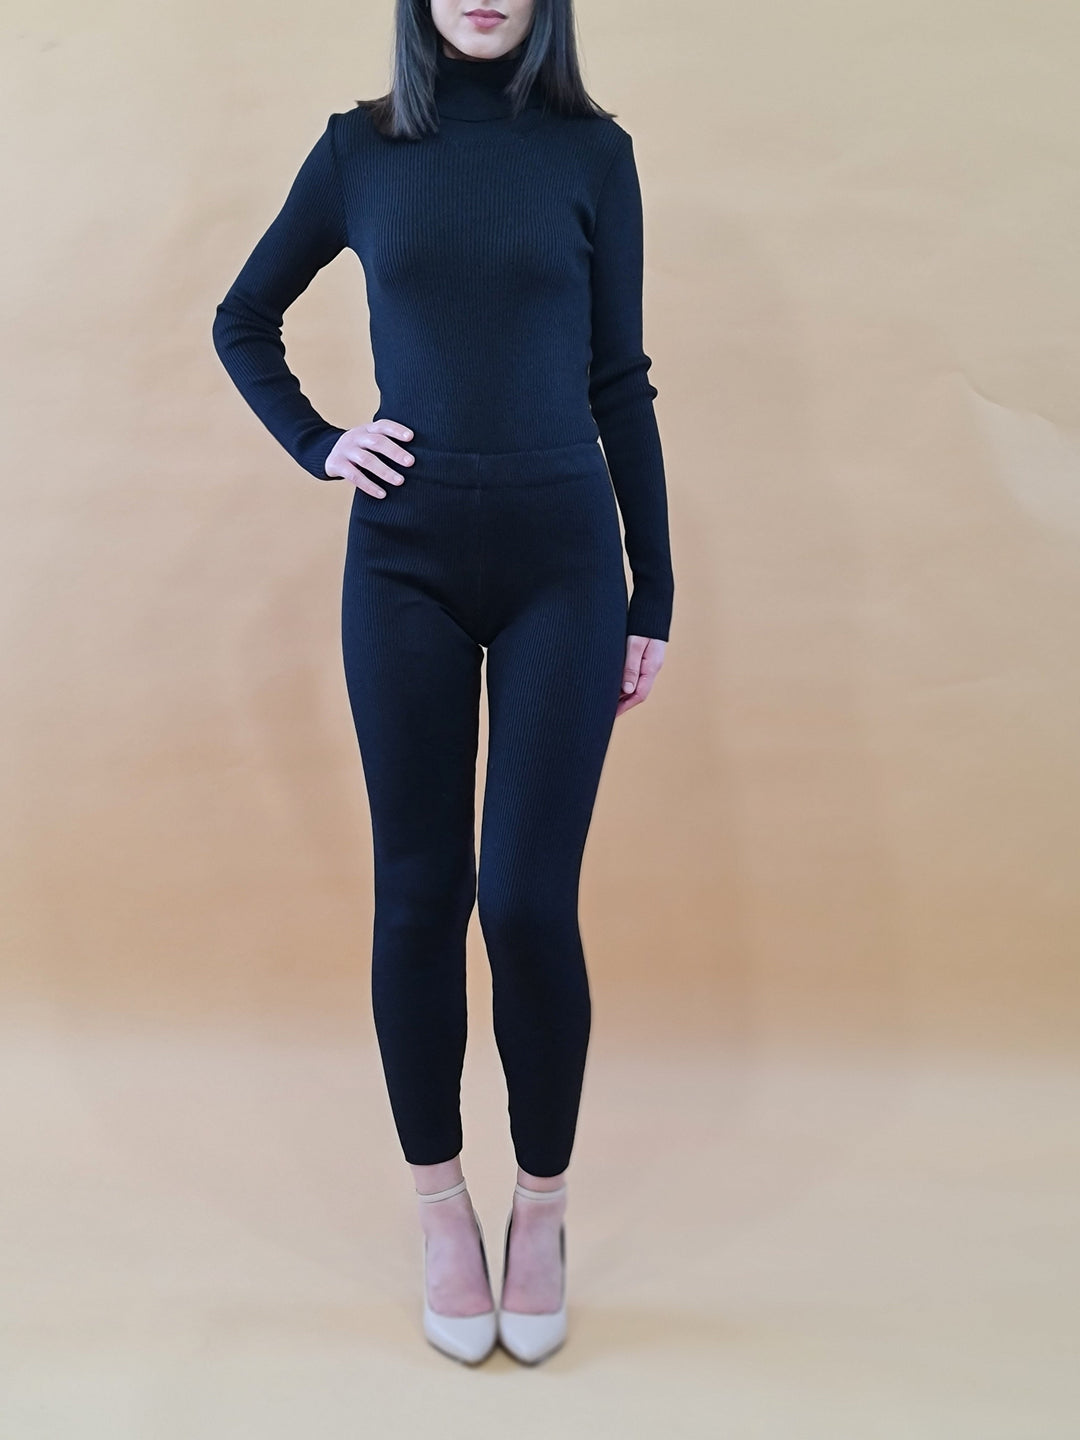 Woman in black turtleneck sweater and leggings, beige heels, standing against beige background